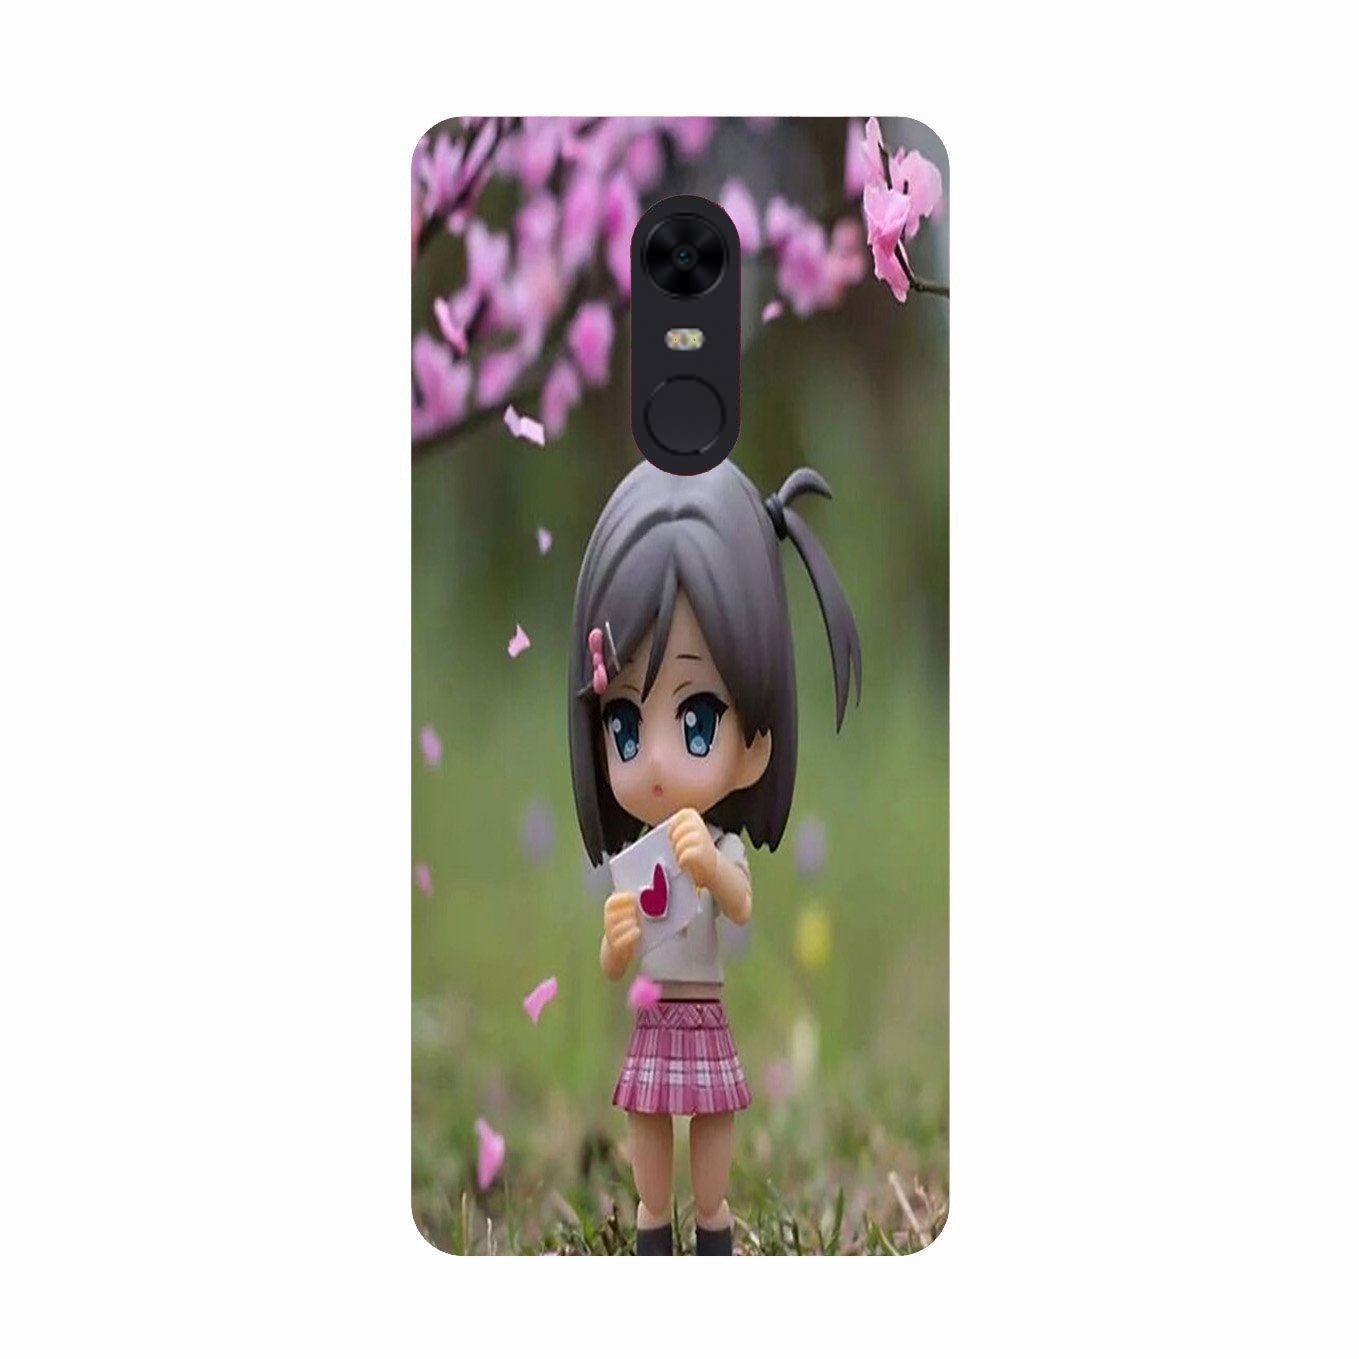 Cute Girl Case for Redmi Note 5